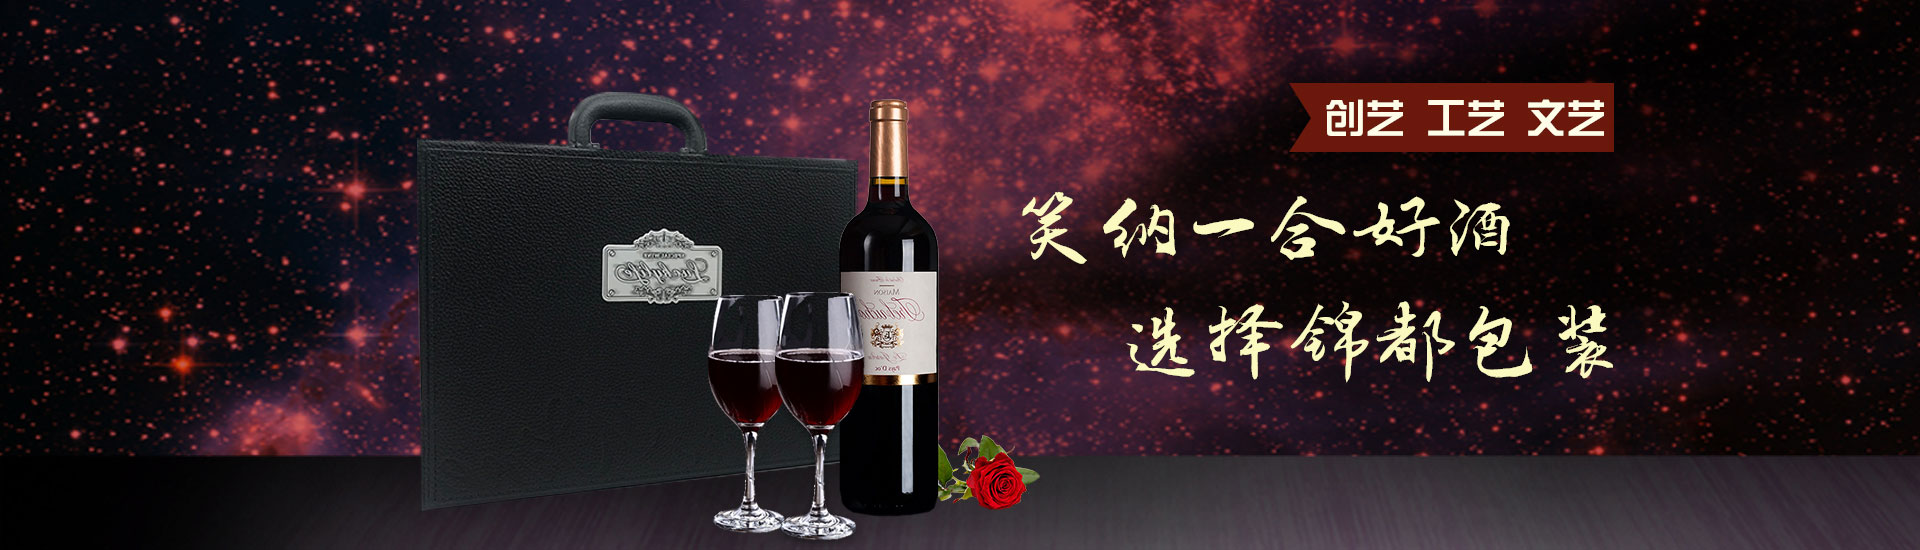 青岛包装盒|青岛红酒盒|青岛红酒木盒|青岛红酒皮盒|青岛红酒纸盒|青岛葡萄酒盒